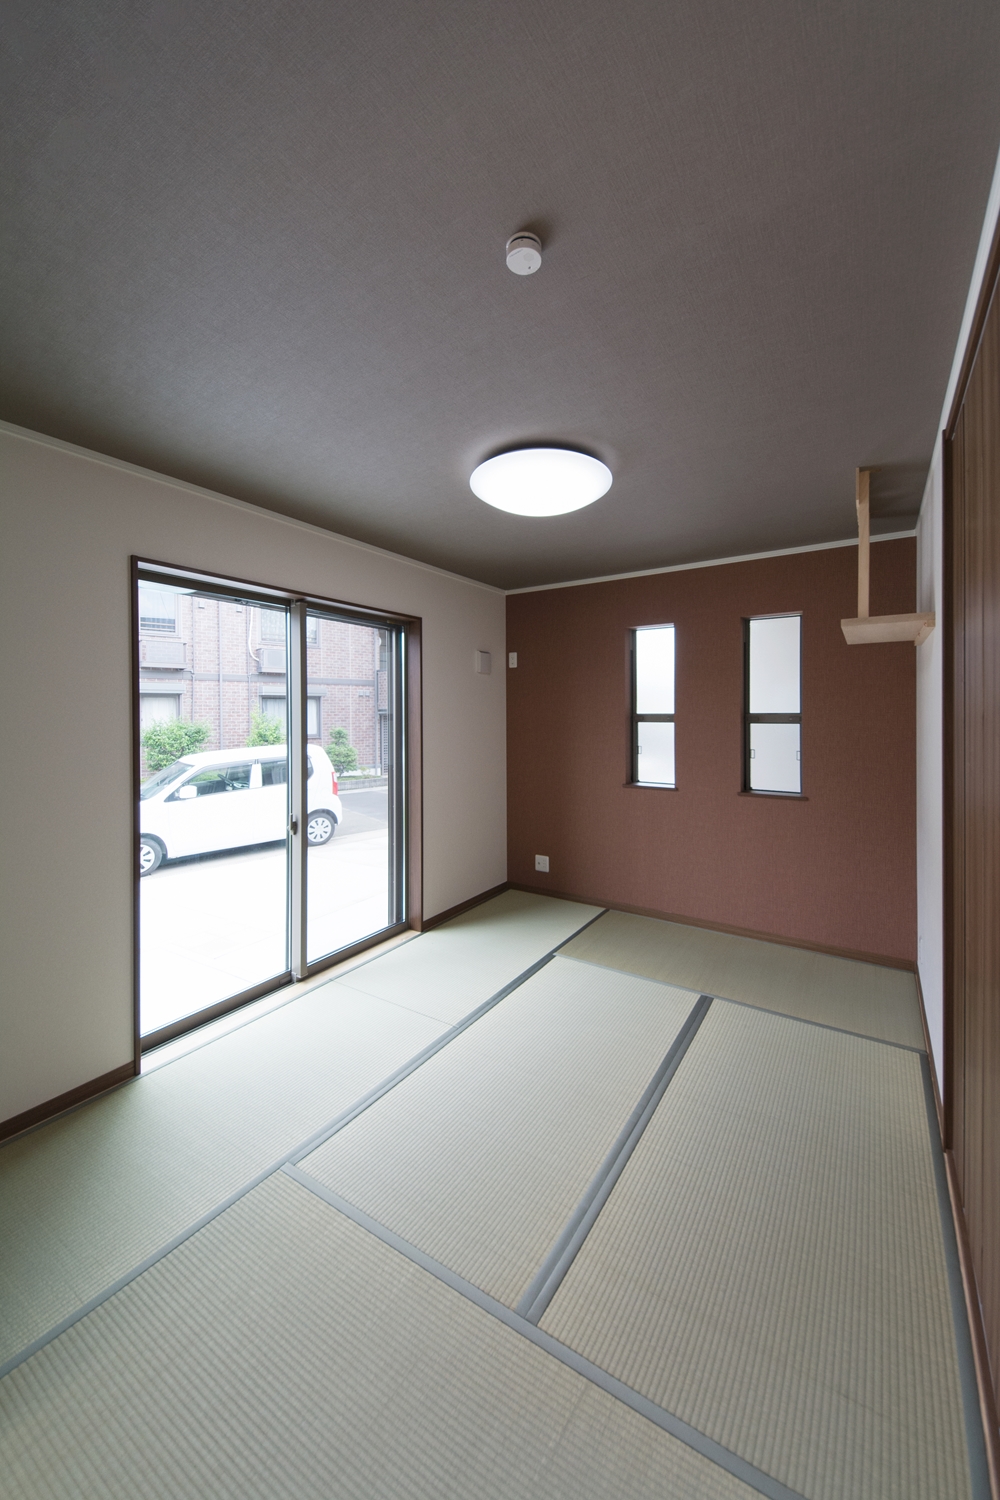 畳のさわやかなグリーンが空間を彩る1階畳敷きスペース。ブランのアクセントクロスがモダンな空間を演出。